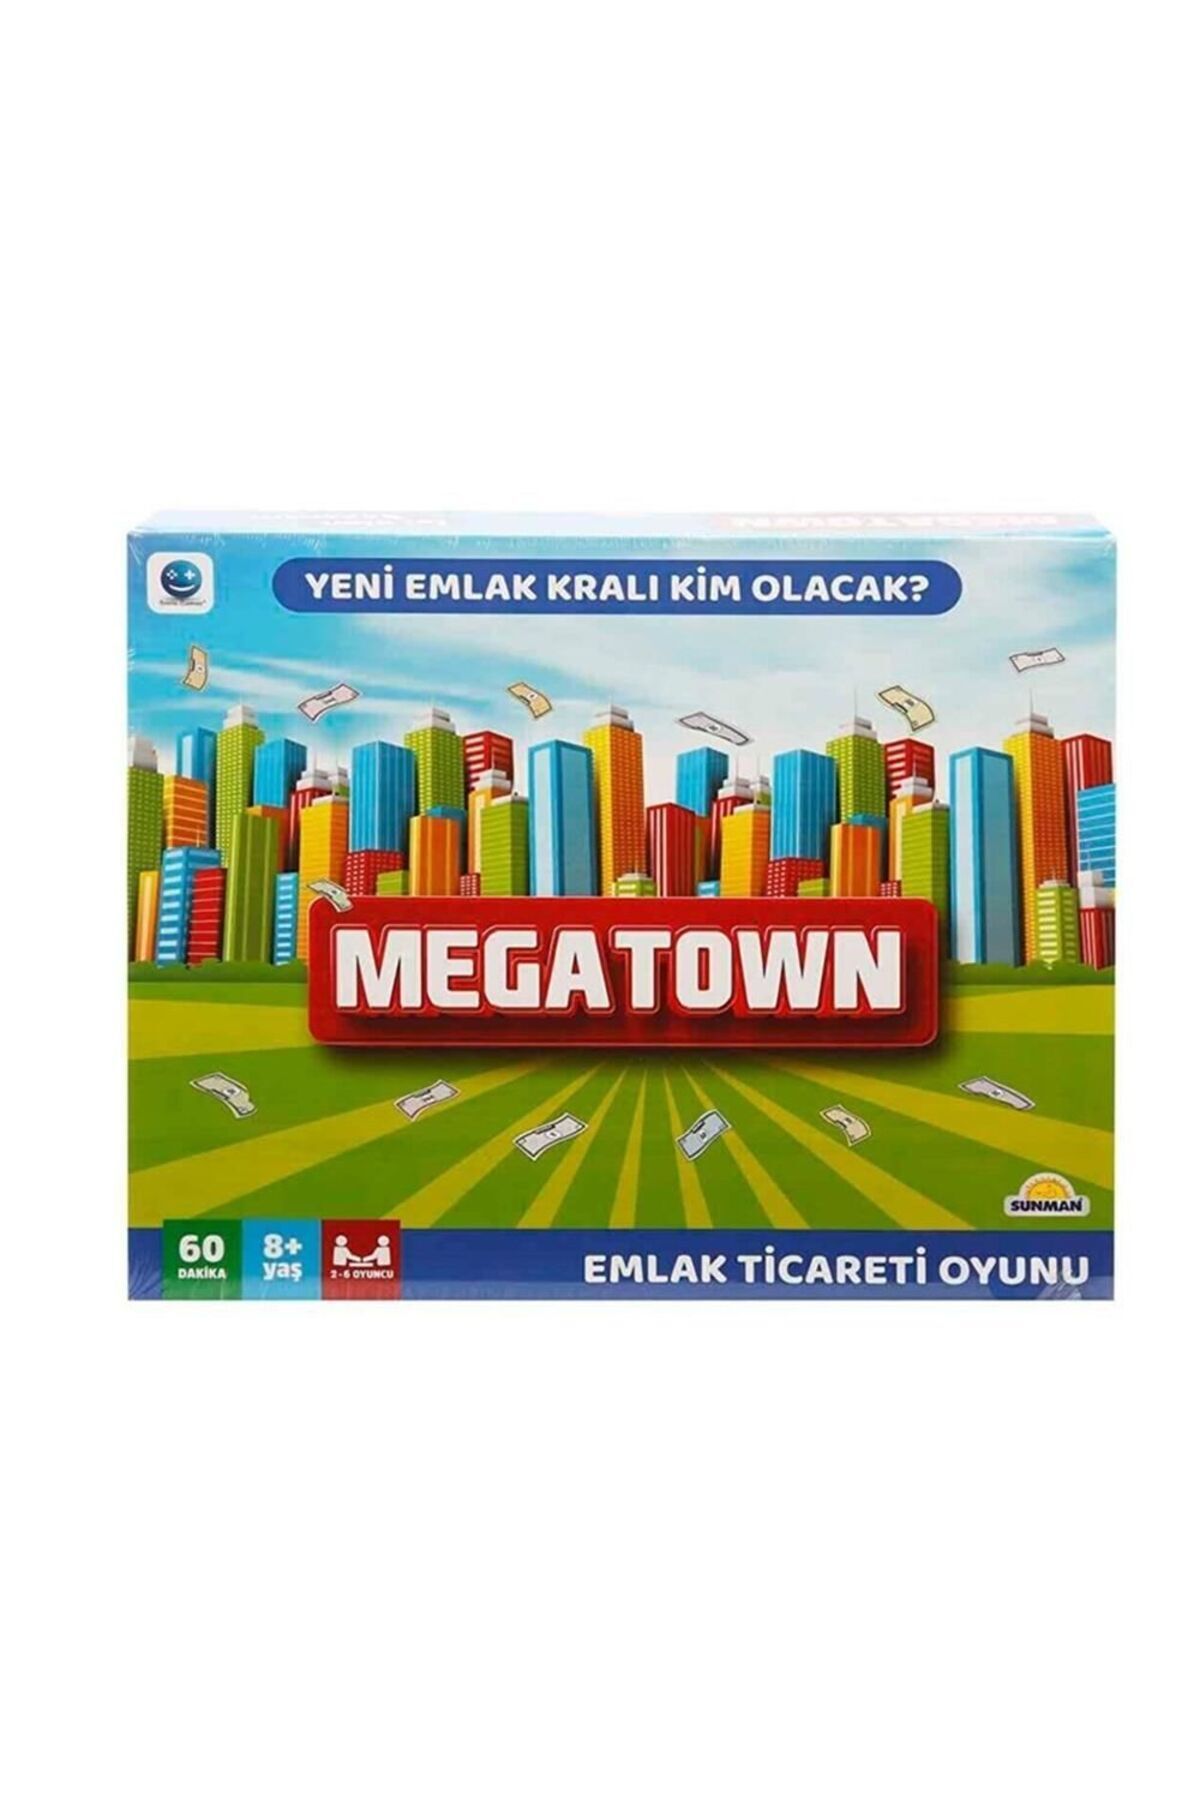 Sunman Megatown Emlak Ticareti Oyunu